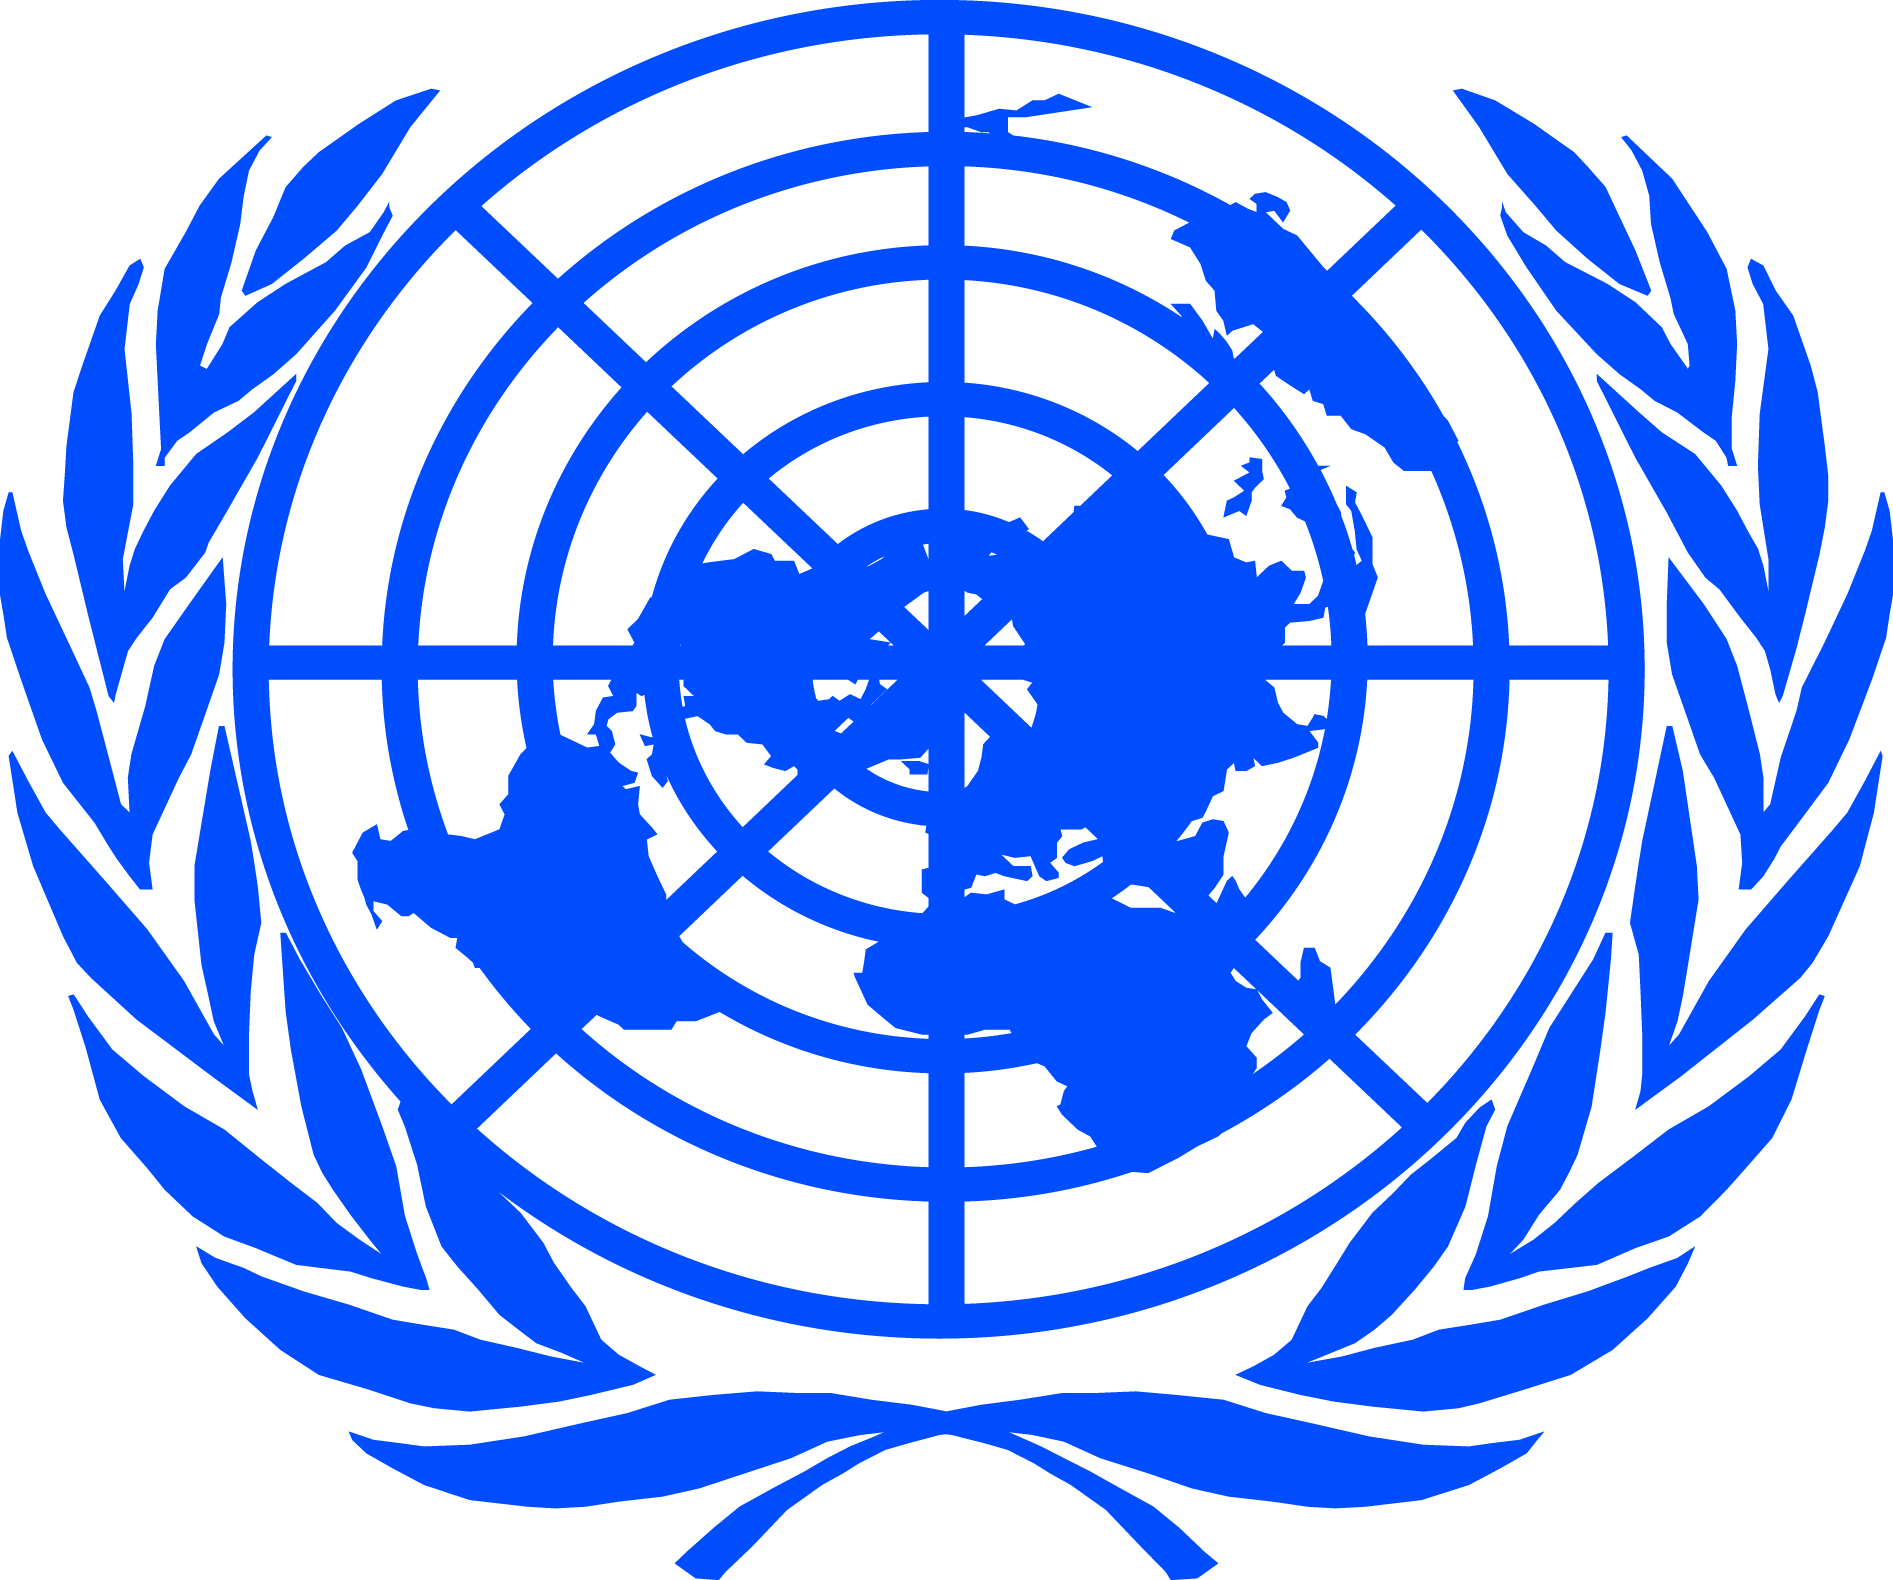 Е оон. Всемирная организация ООН. Международные организации ООН. Организация Объединенных наций (ООН). Совет безопасности ООН флаг.